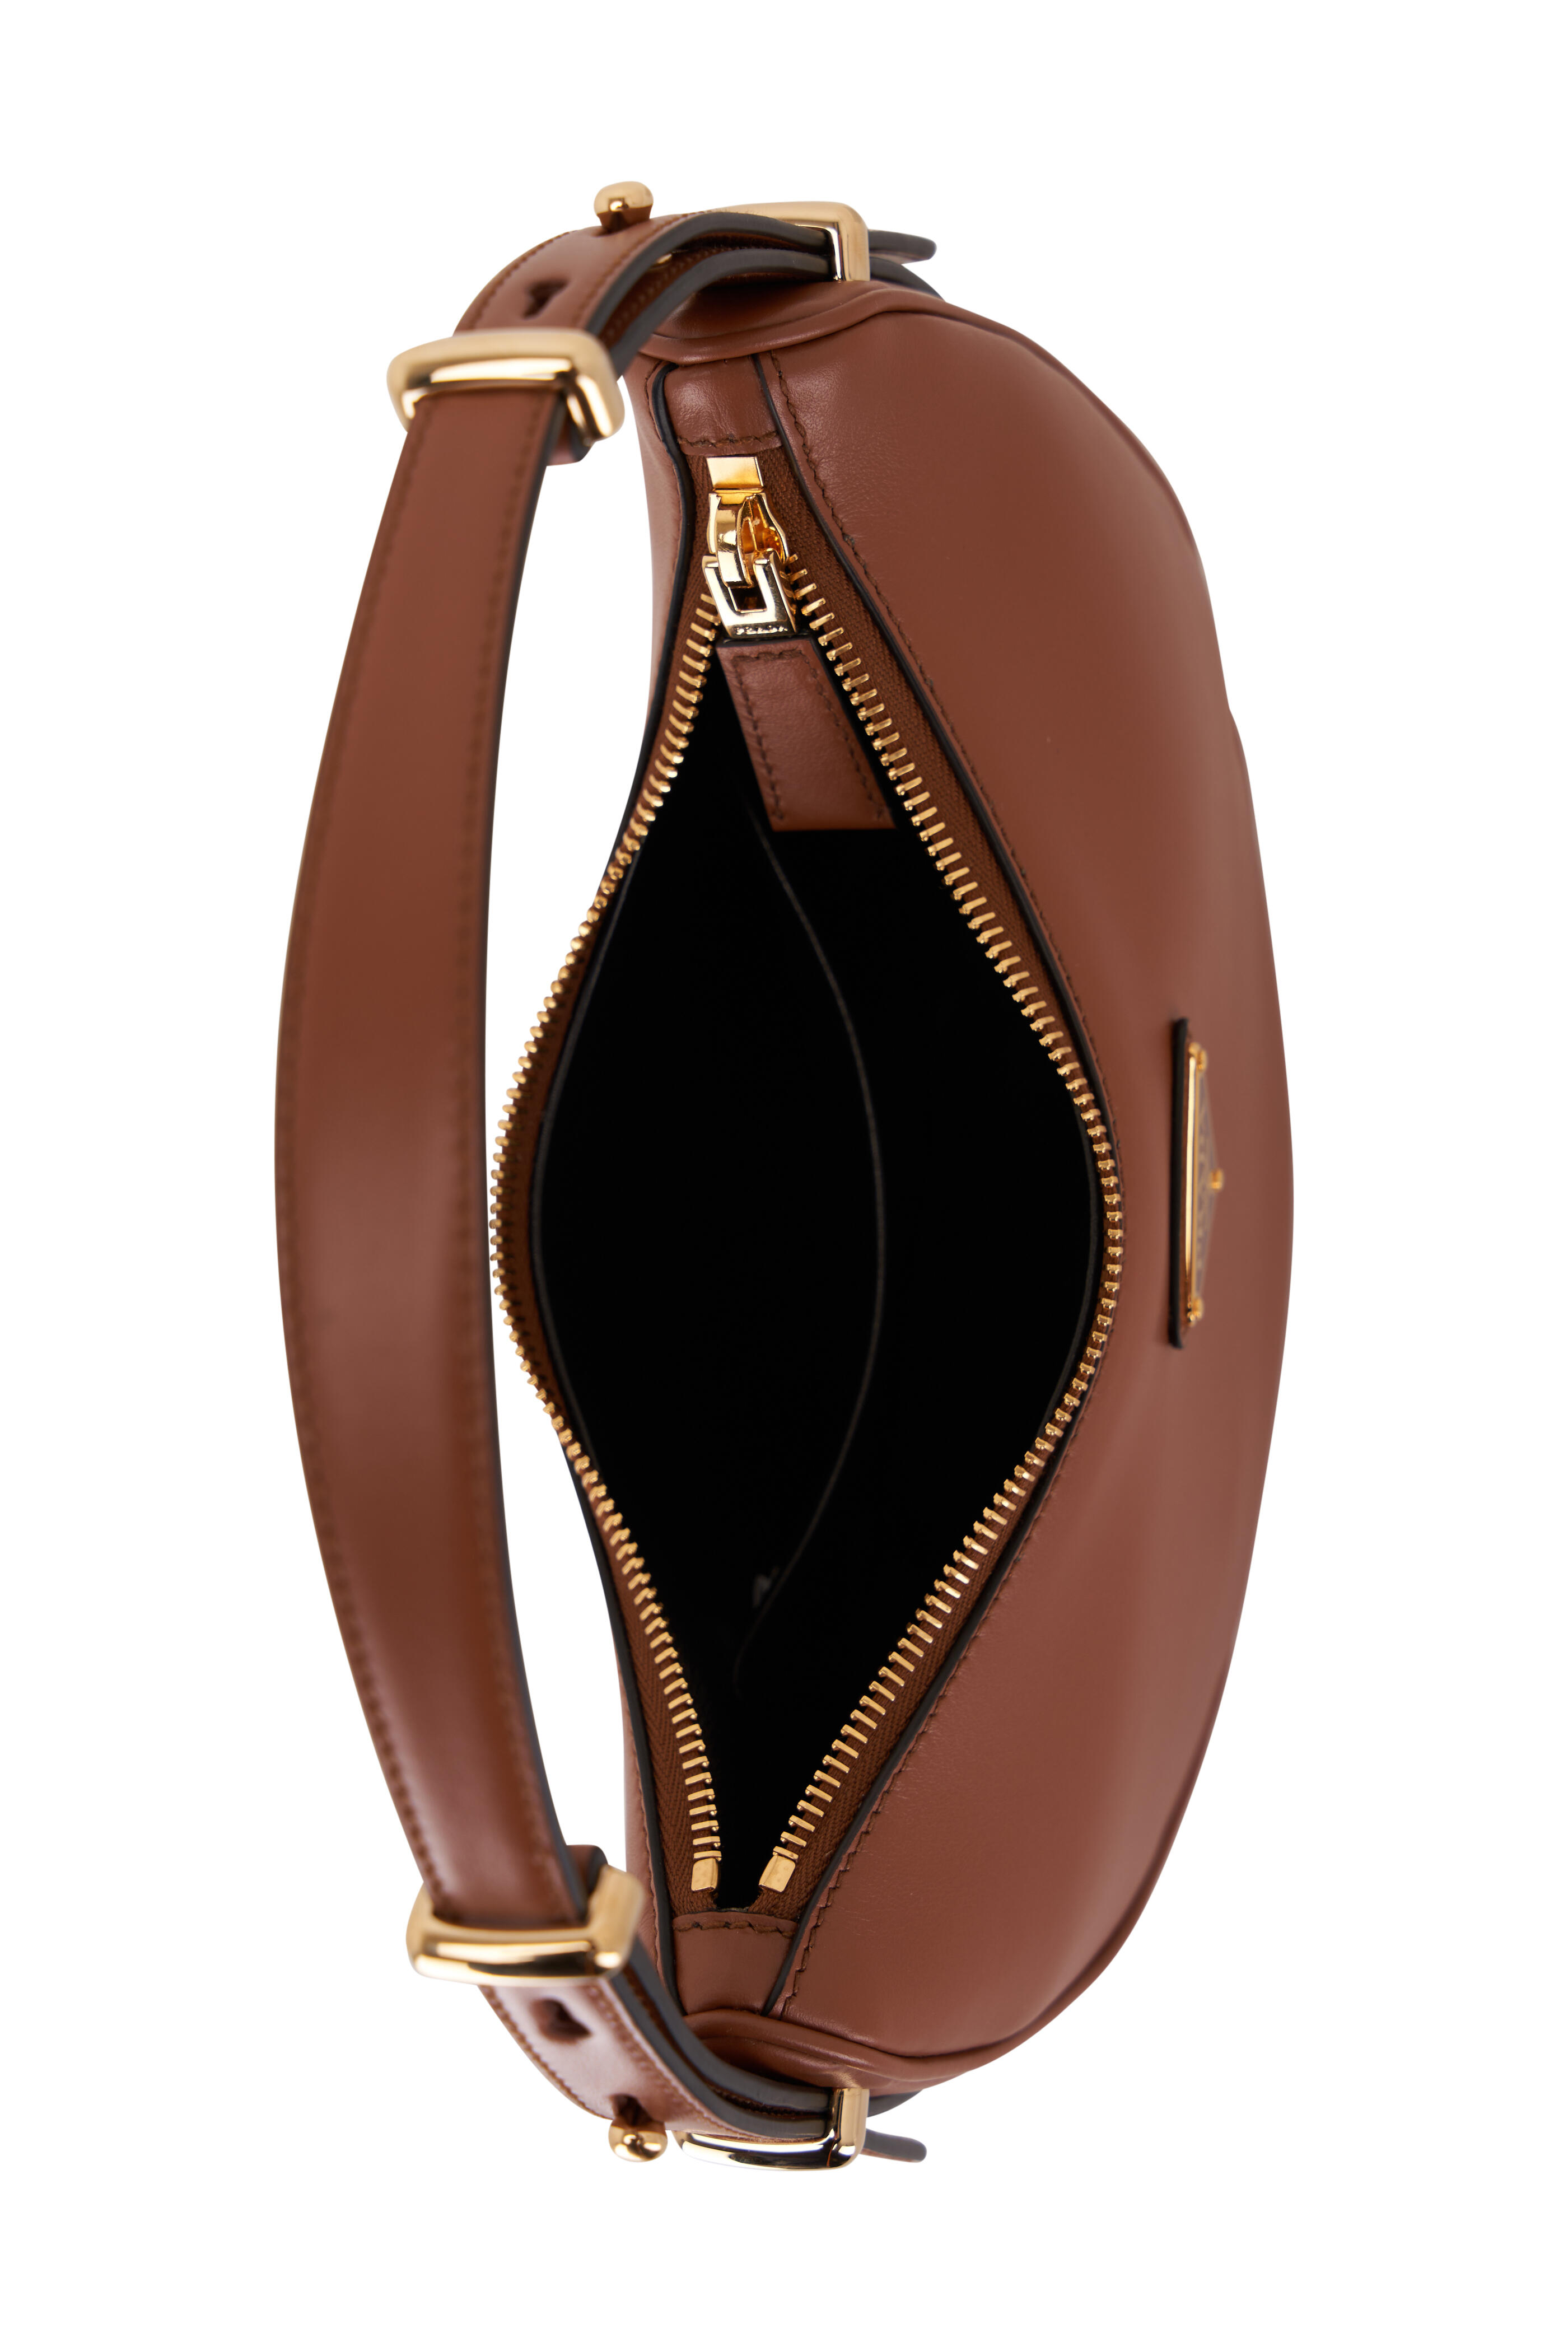 Prada - Prada Arqué Leather Shoulder Bag